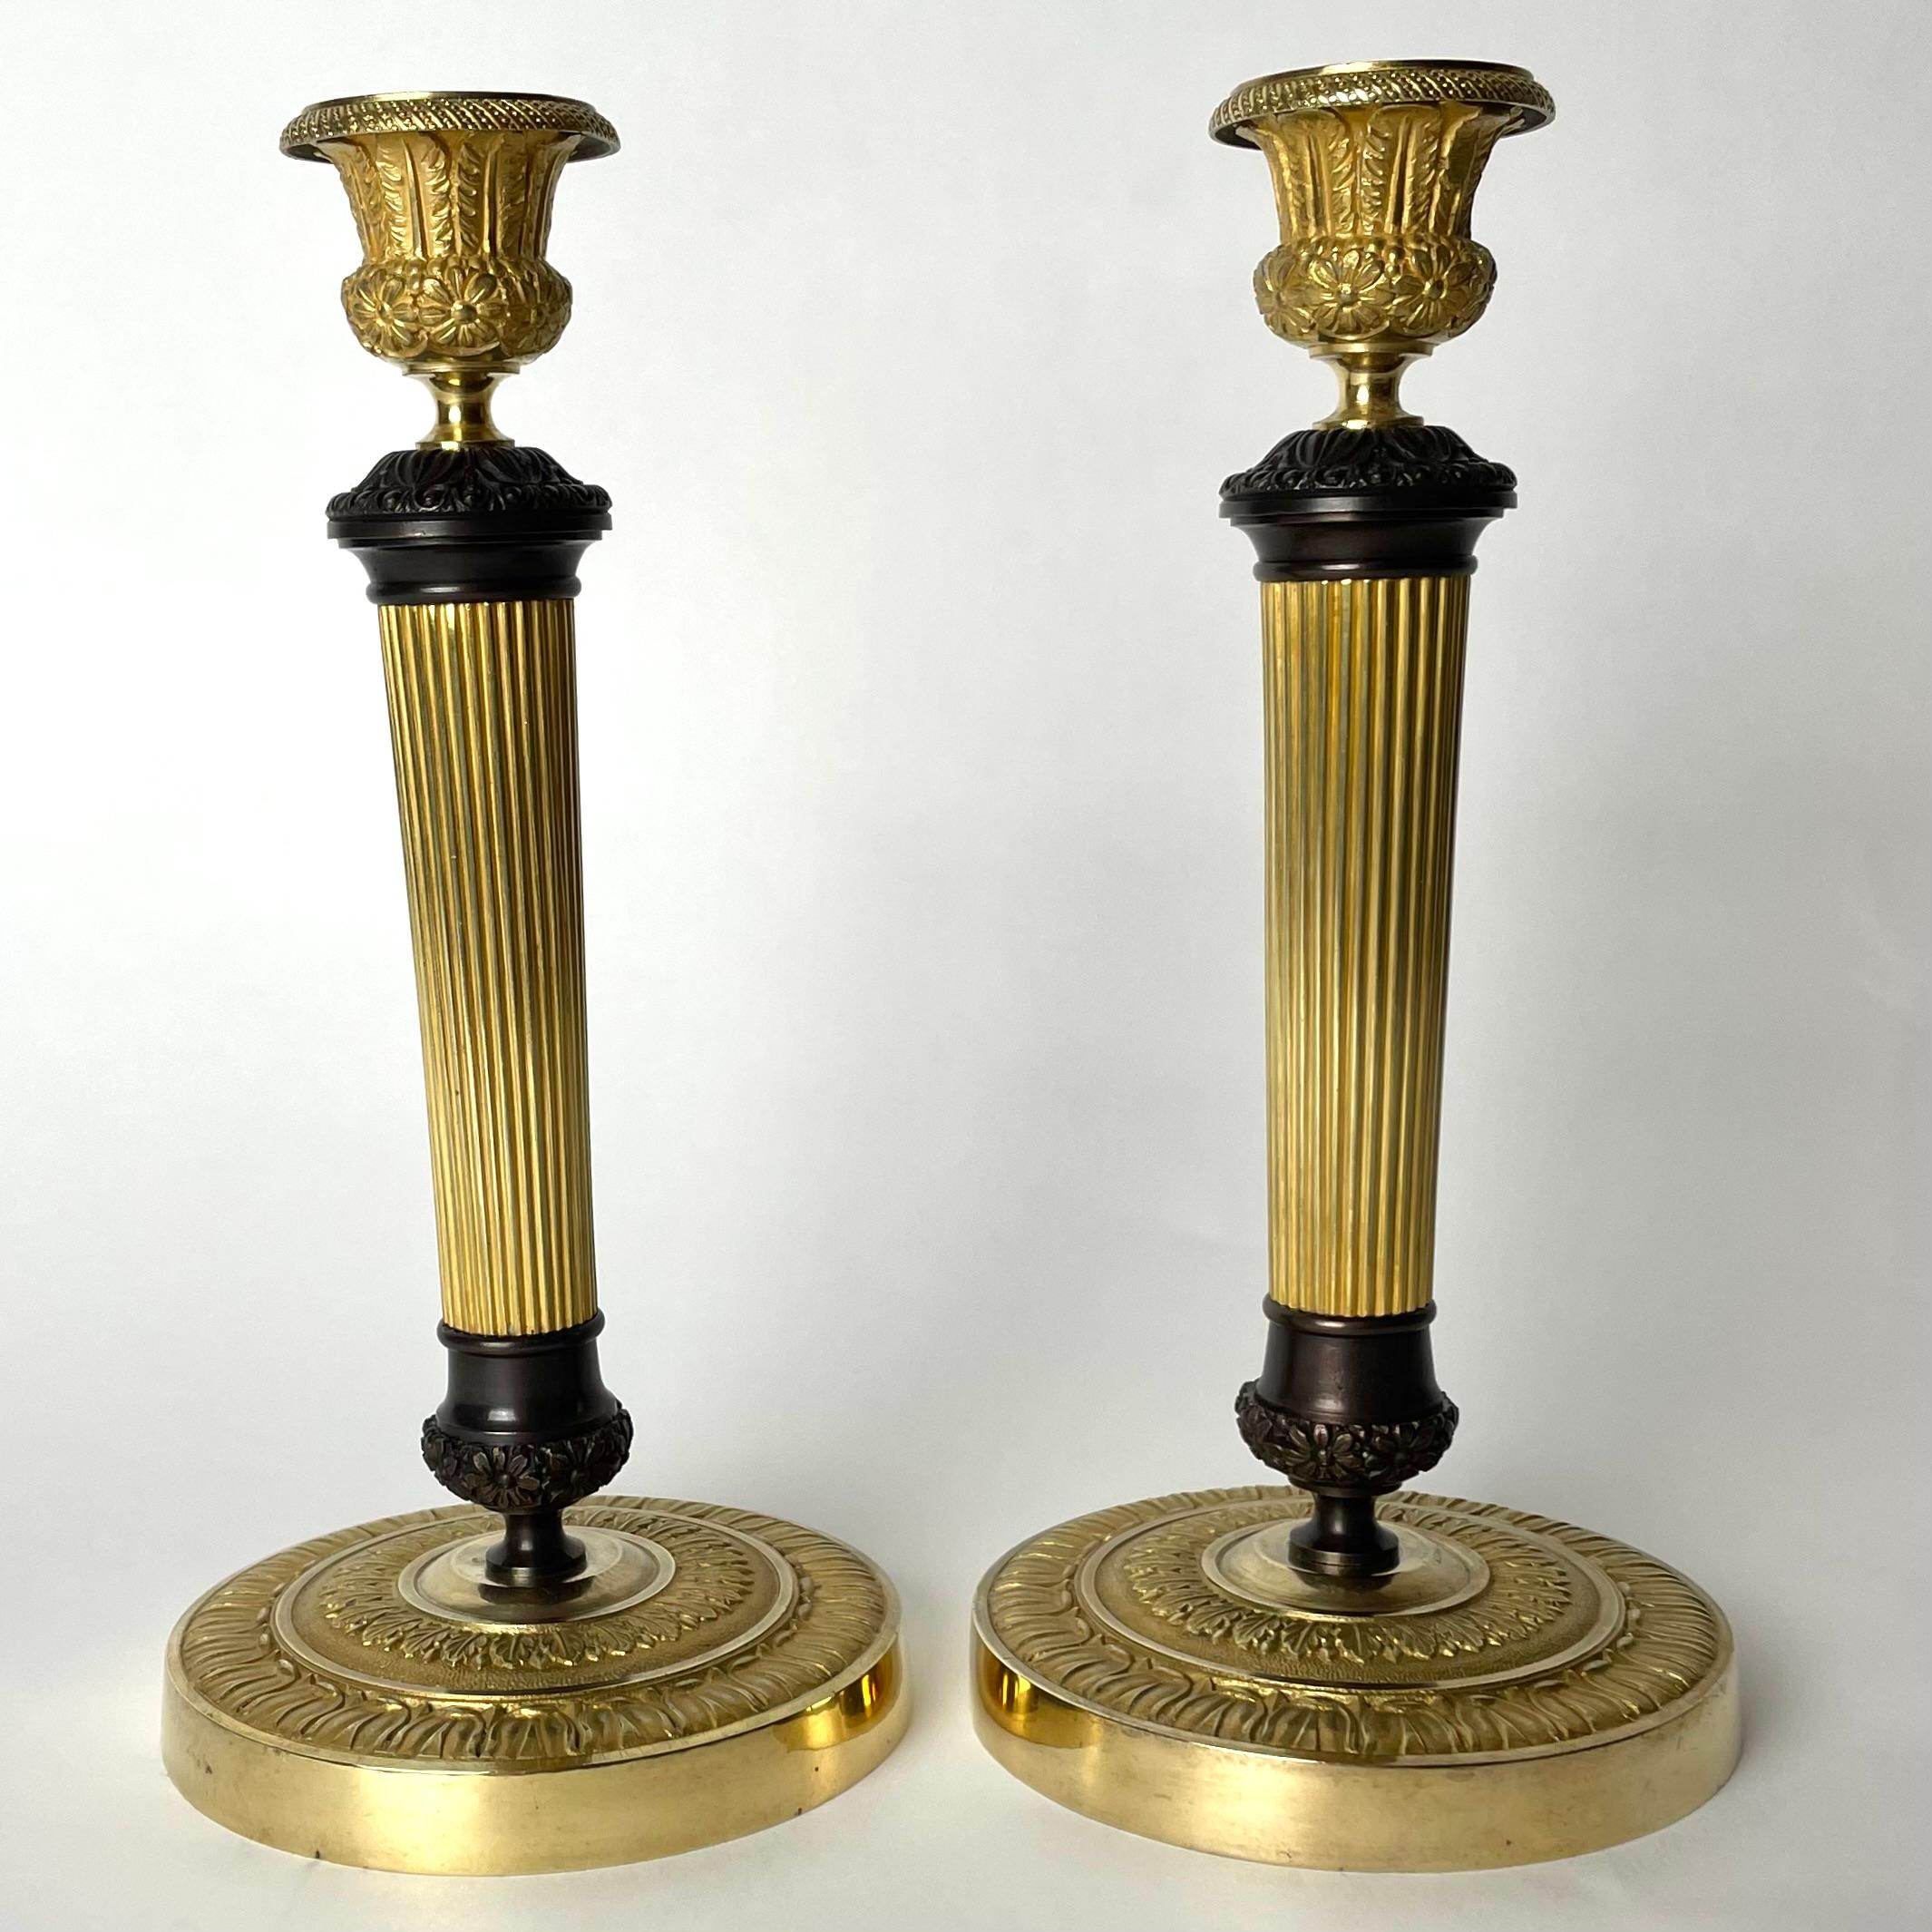 Wunderschönes Paar Empire-Kerzenleuchter aus vergoldeter und dunkel patinierter Bronze. Hergestellt in Frankreich in den 1820er Jahren. Sehr zeitgemäßes Design mit Blumen und Blättern. Kühle und ungewöhnliche Komposition zwischen vergoldeter und